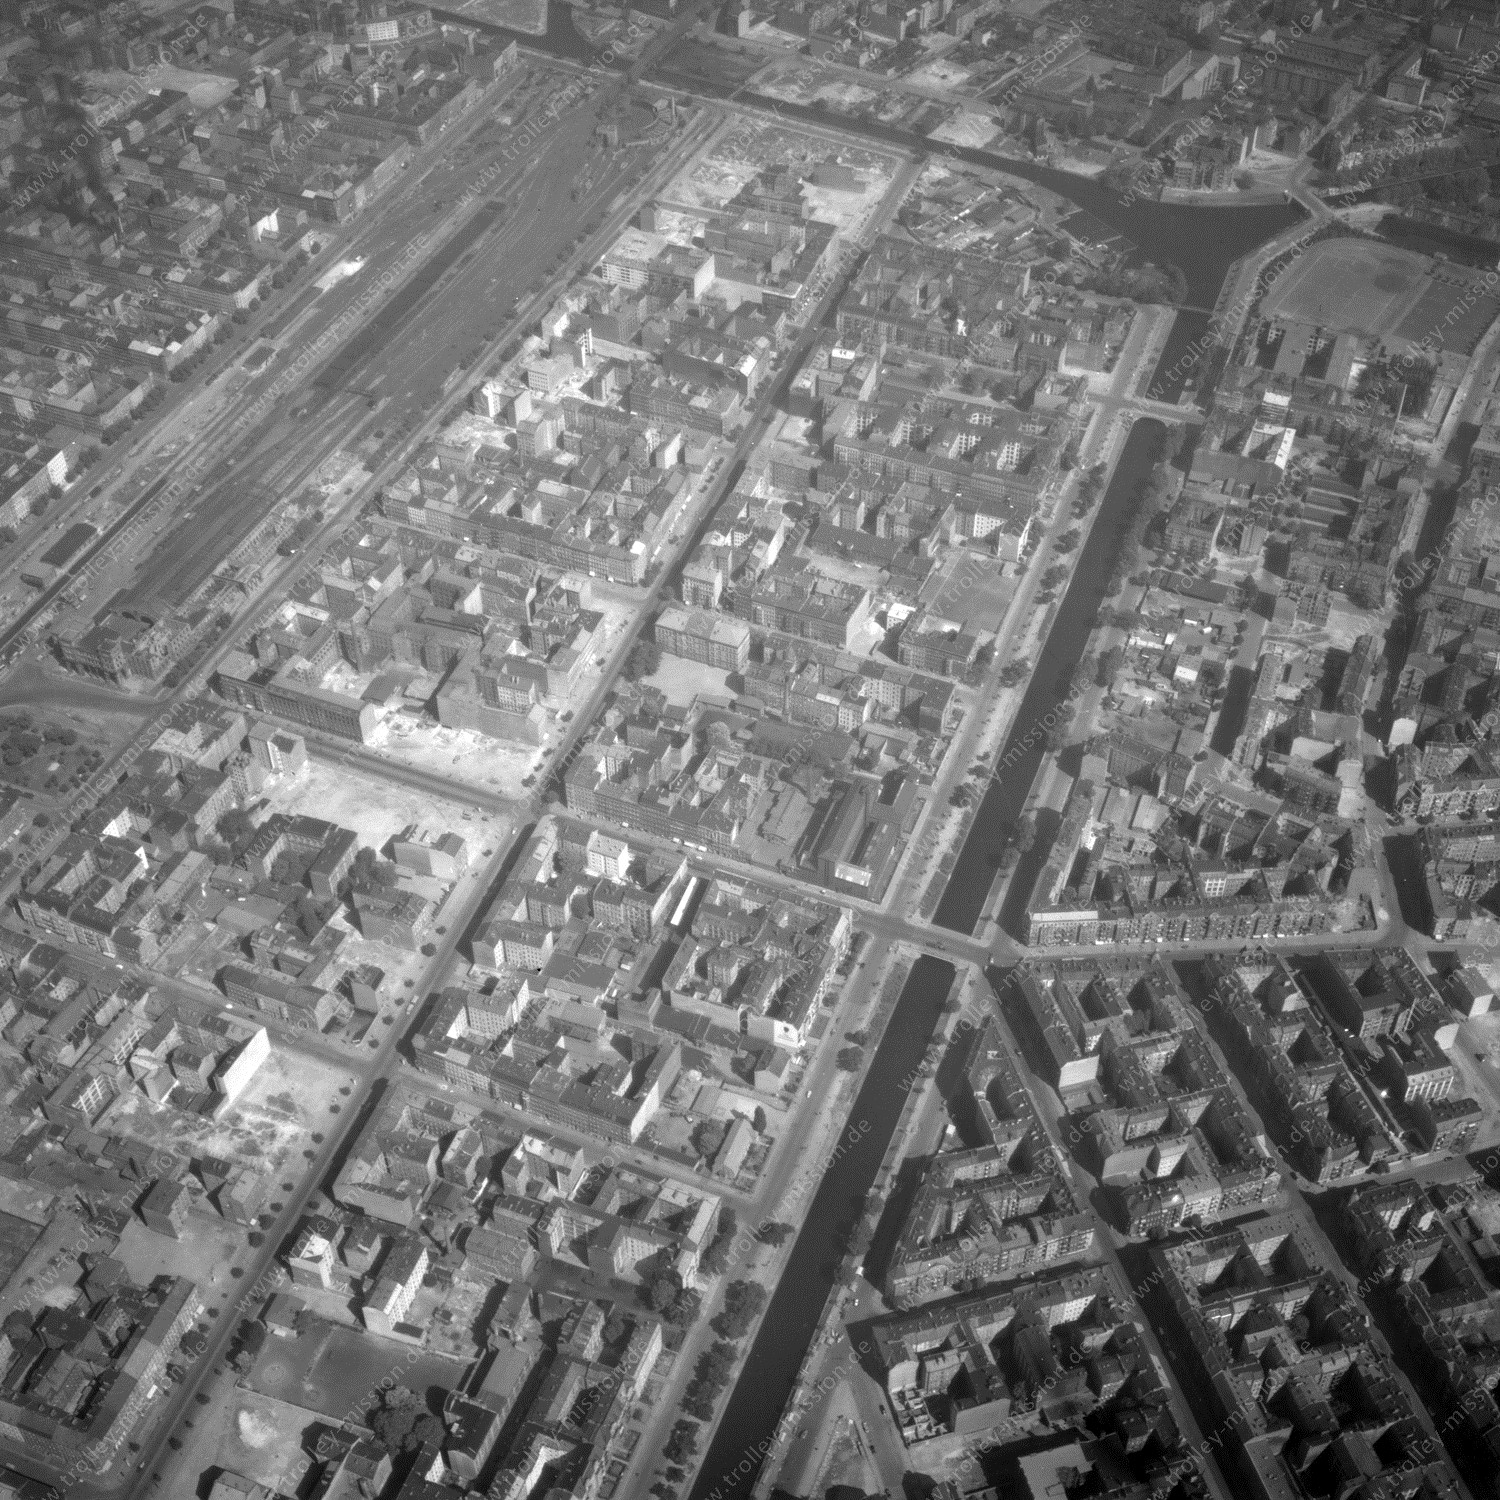 Alte Fotos und Luftbilder von Berlin - Luftbildaufnahme Nr. 05 - Historische Luftaufnahmen von West-Berlin aus dem Jahr 1954 - Flugstrecke Mike